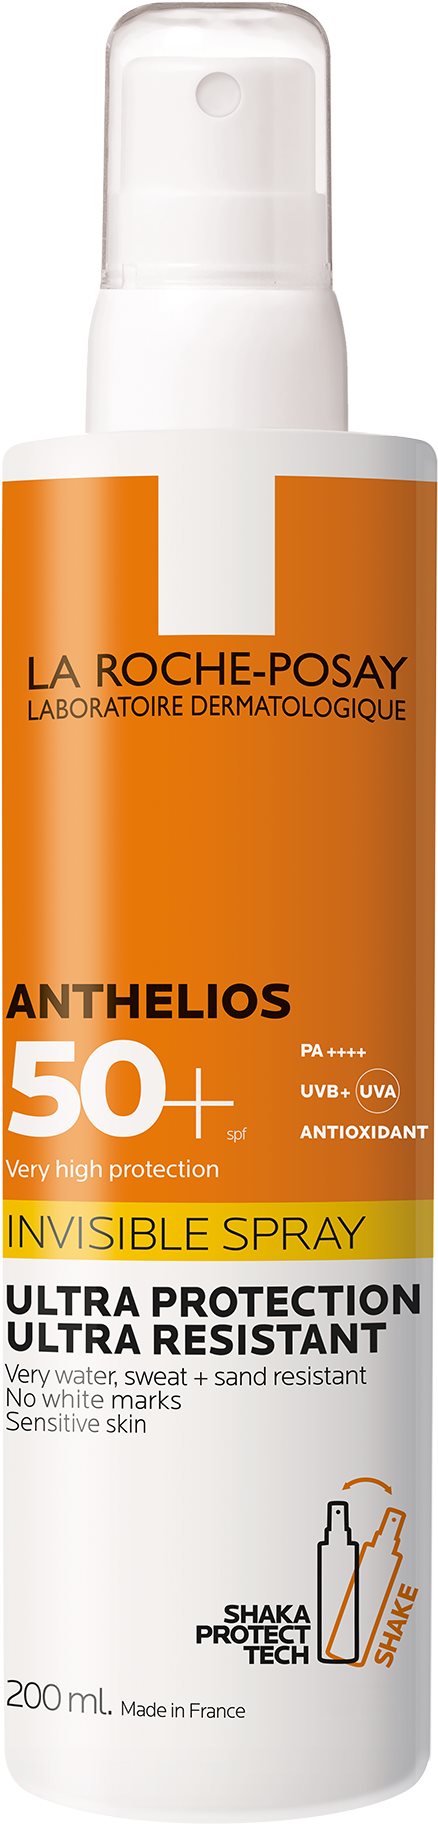 Napozó spray LA ROCHE-POSAY Anthelios XL frissítő testpermet SPF 50+ 200 ml